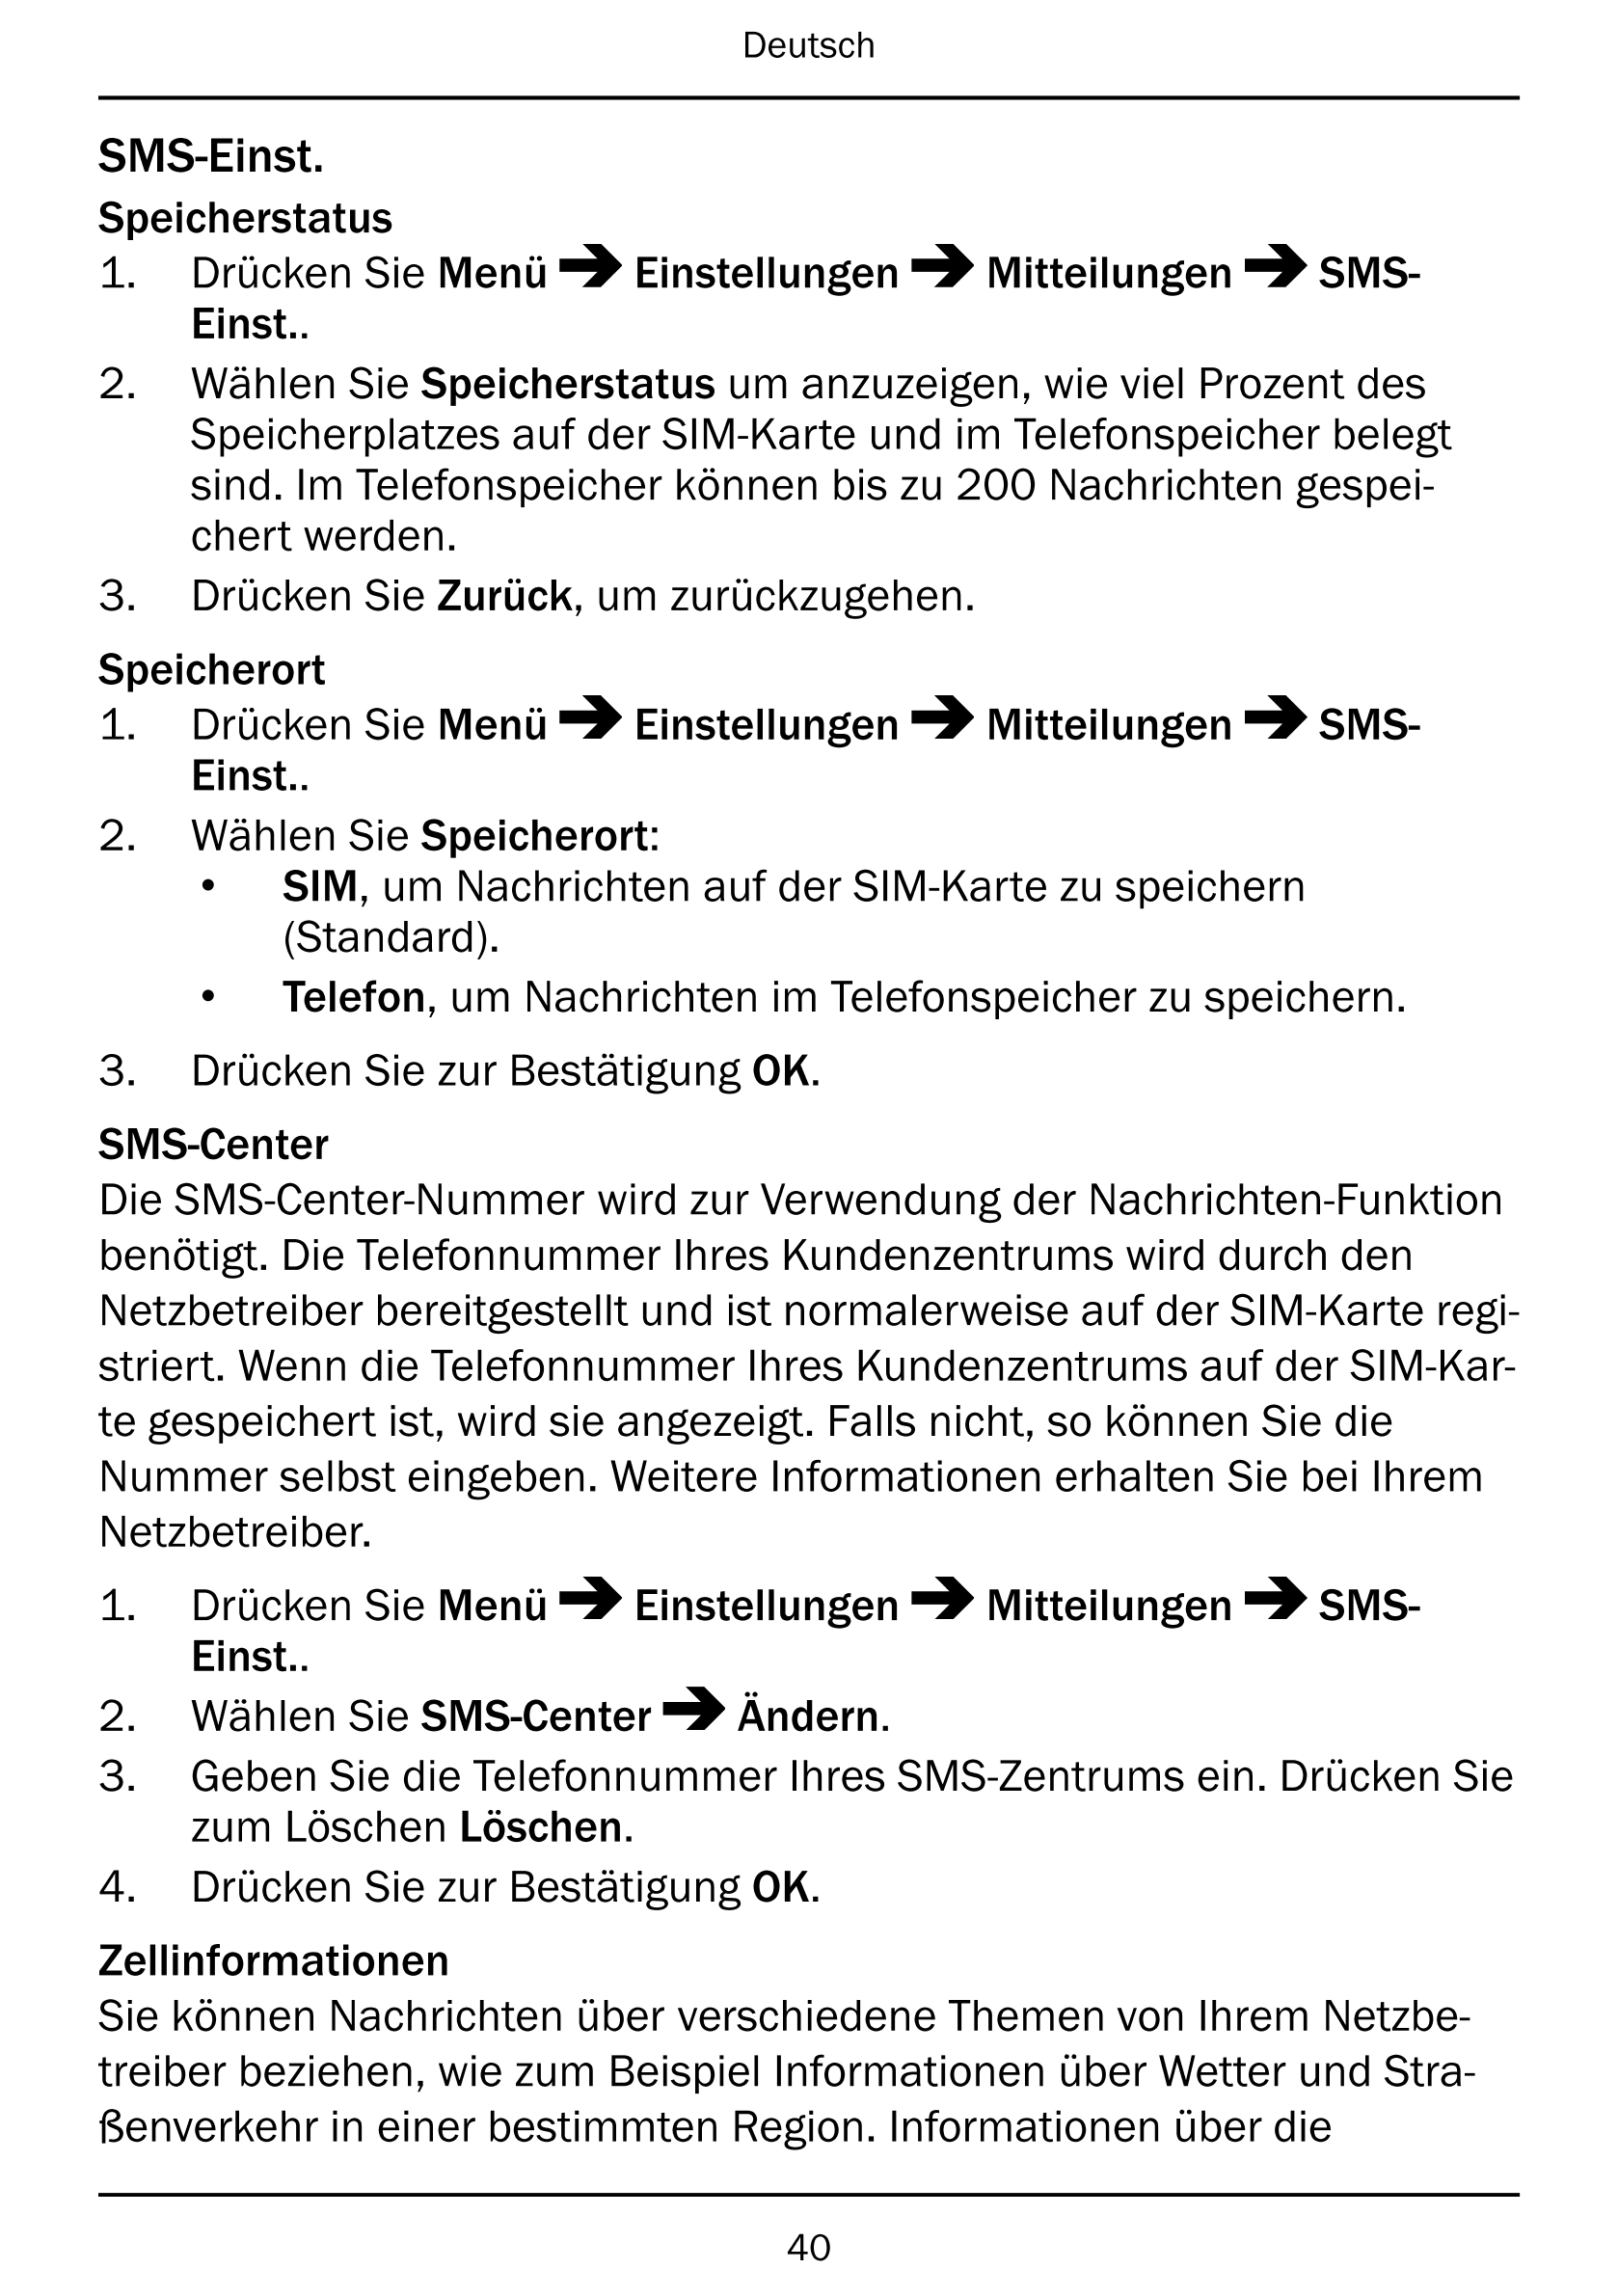 Deutsch
SMS-Einst.
Speicherstatus
1.     Drücken Sie Menü Einstellungen Mitteilungen SMS-
Einst..
2.     Wählen Sie Speicherstat